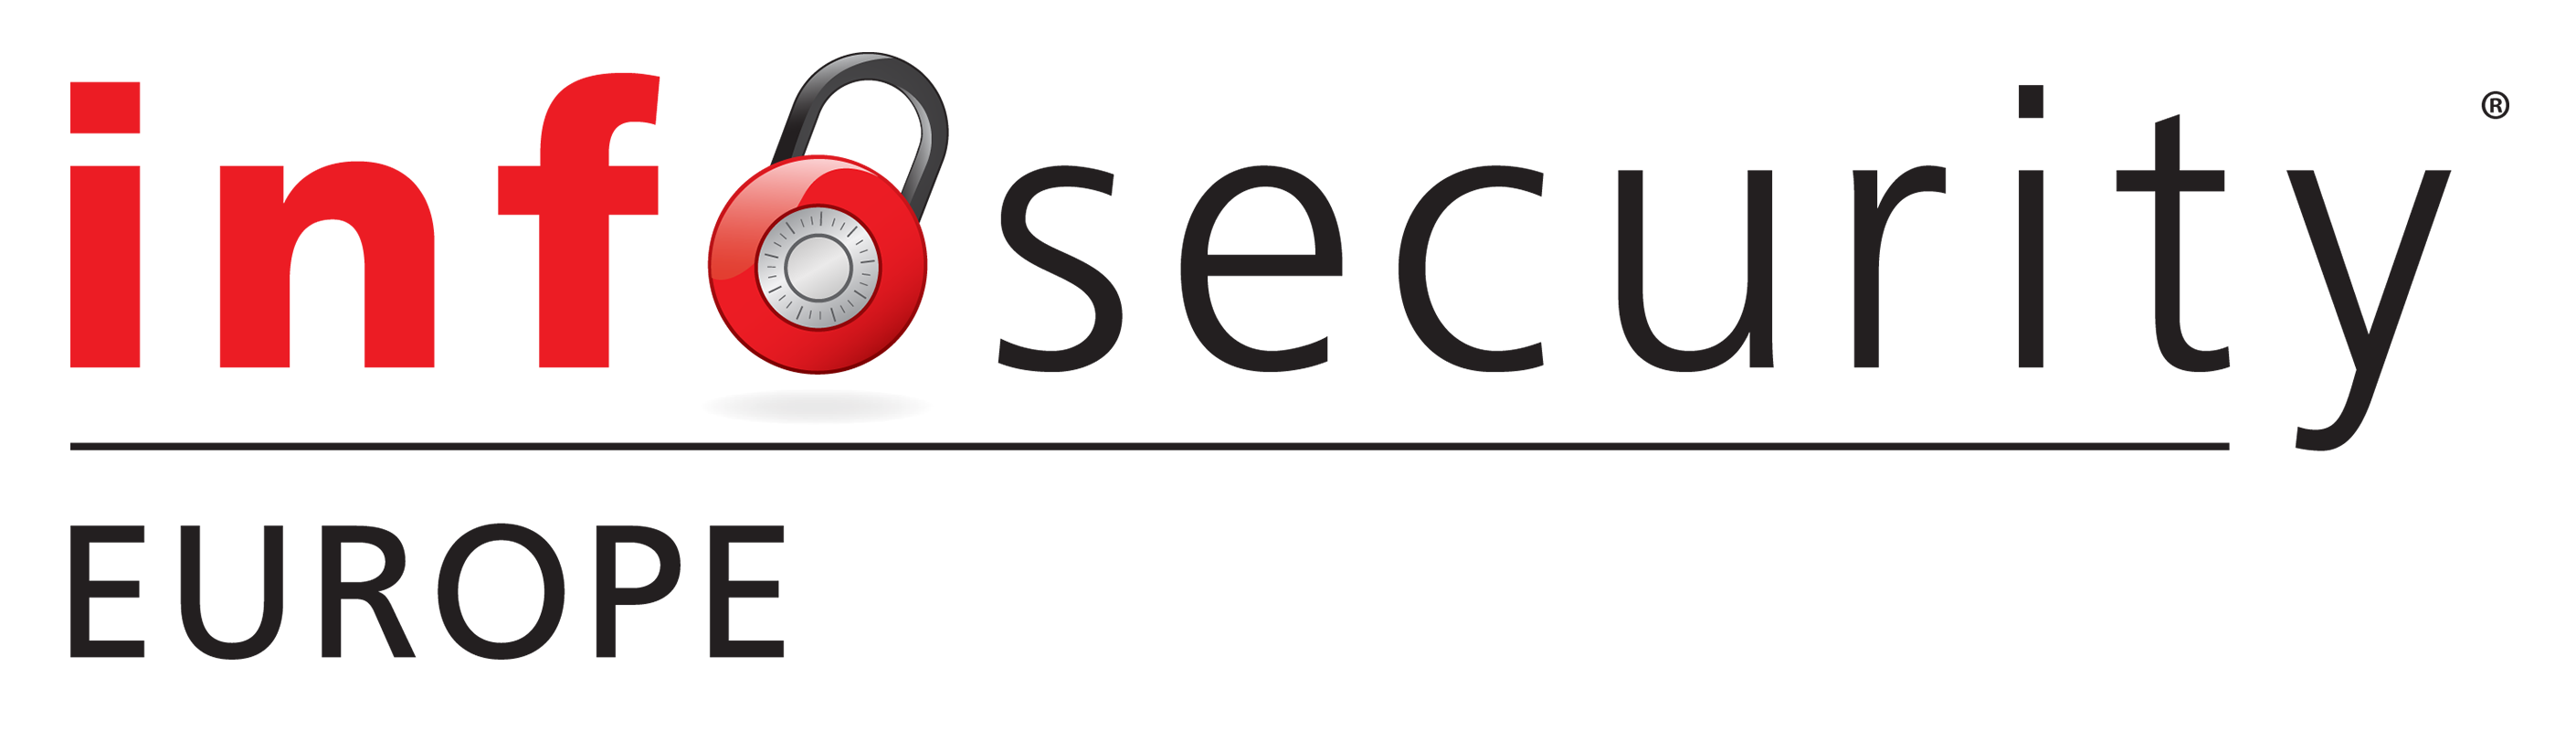 Duo at InfoSecurity Europe